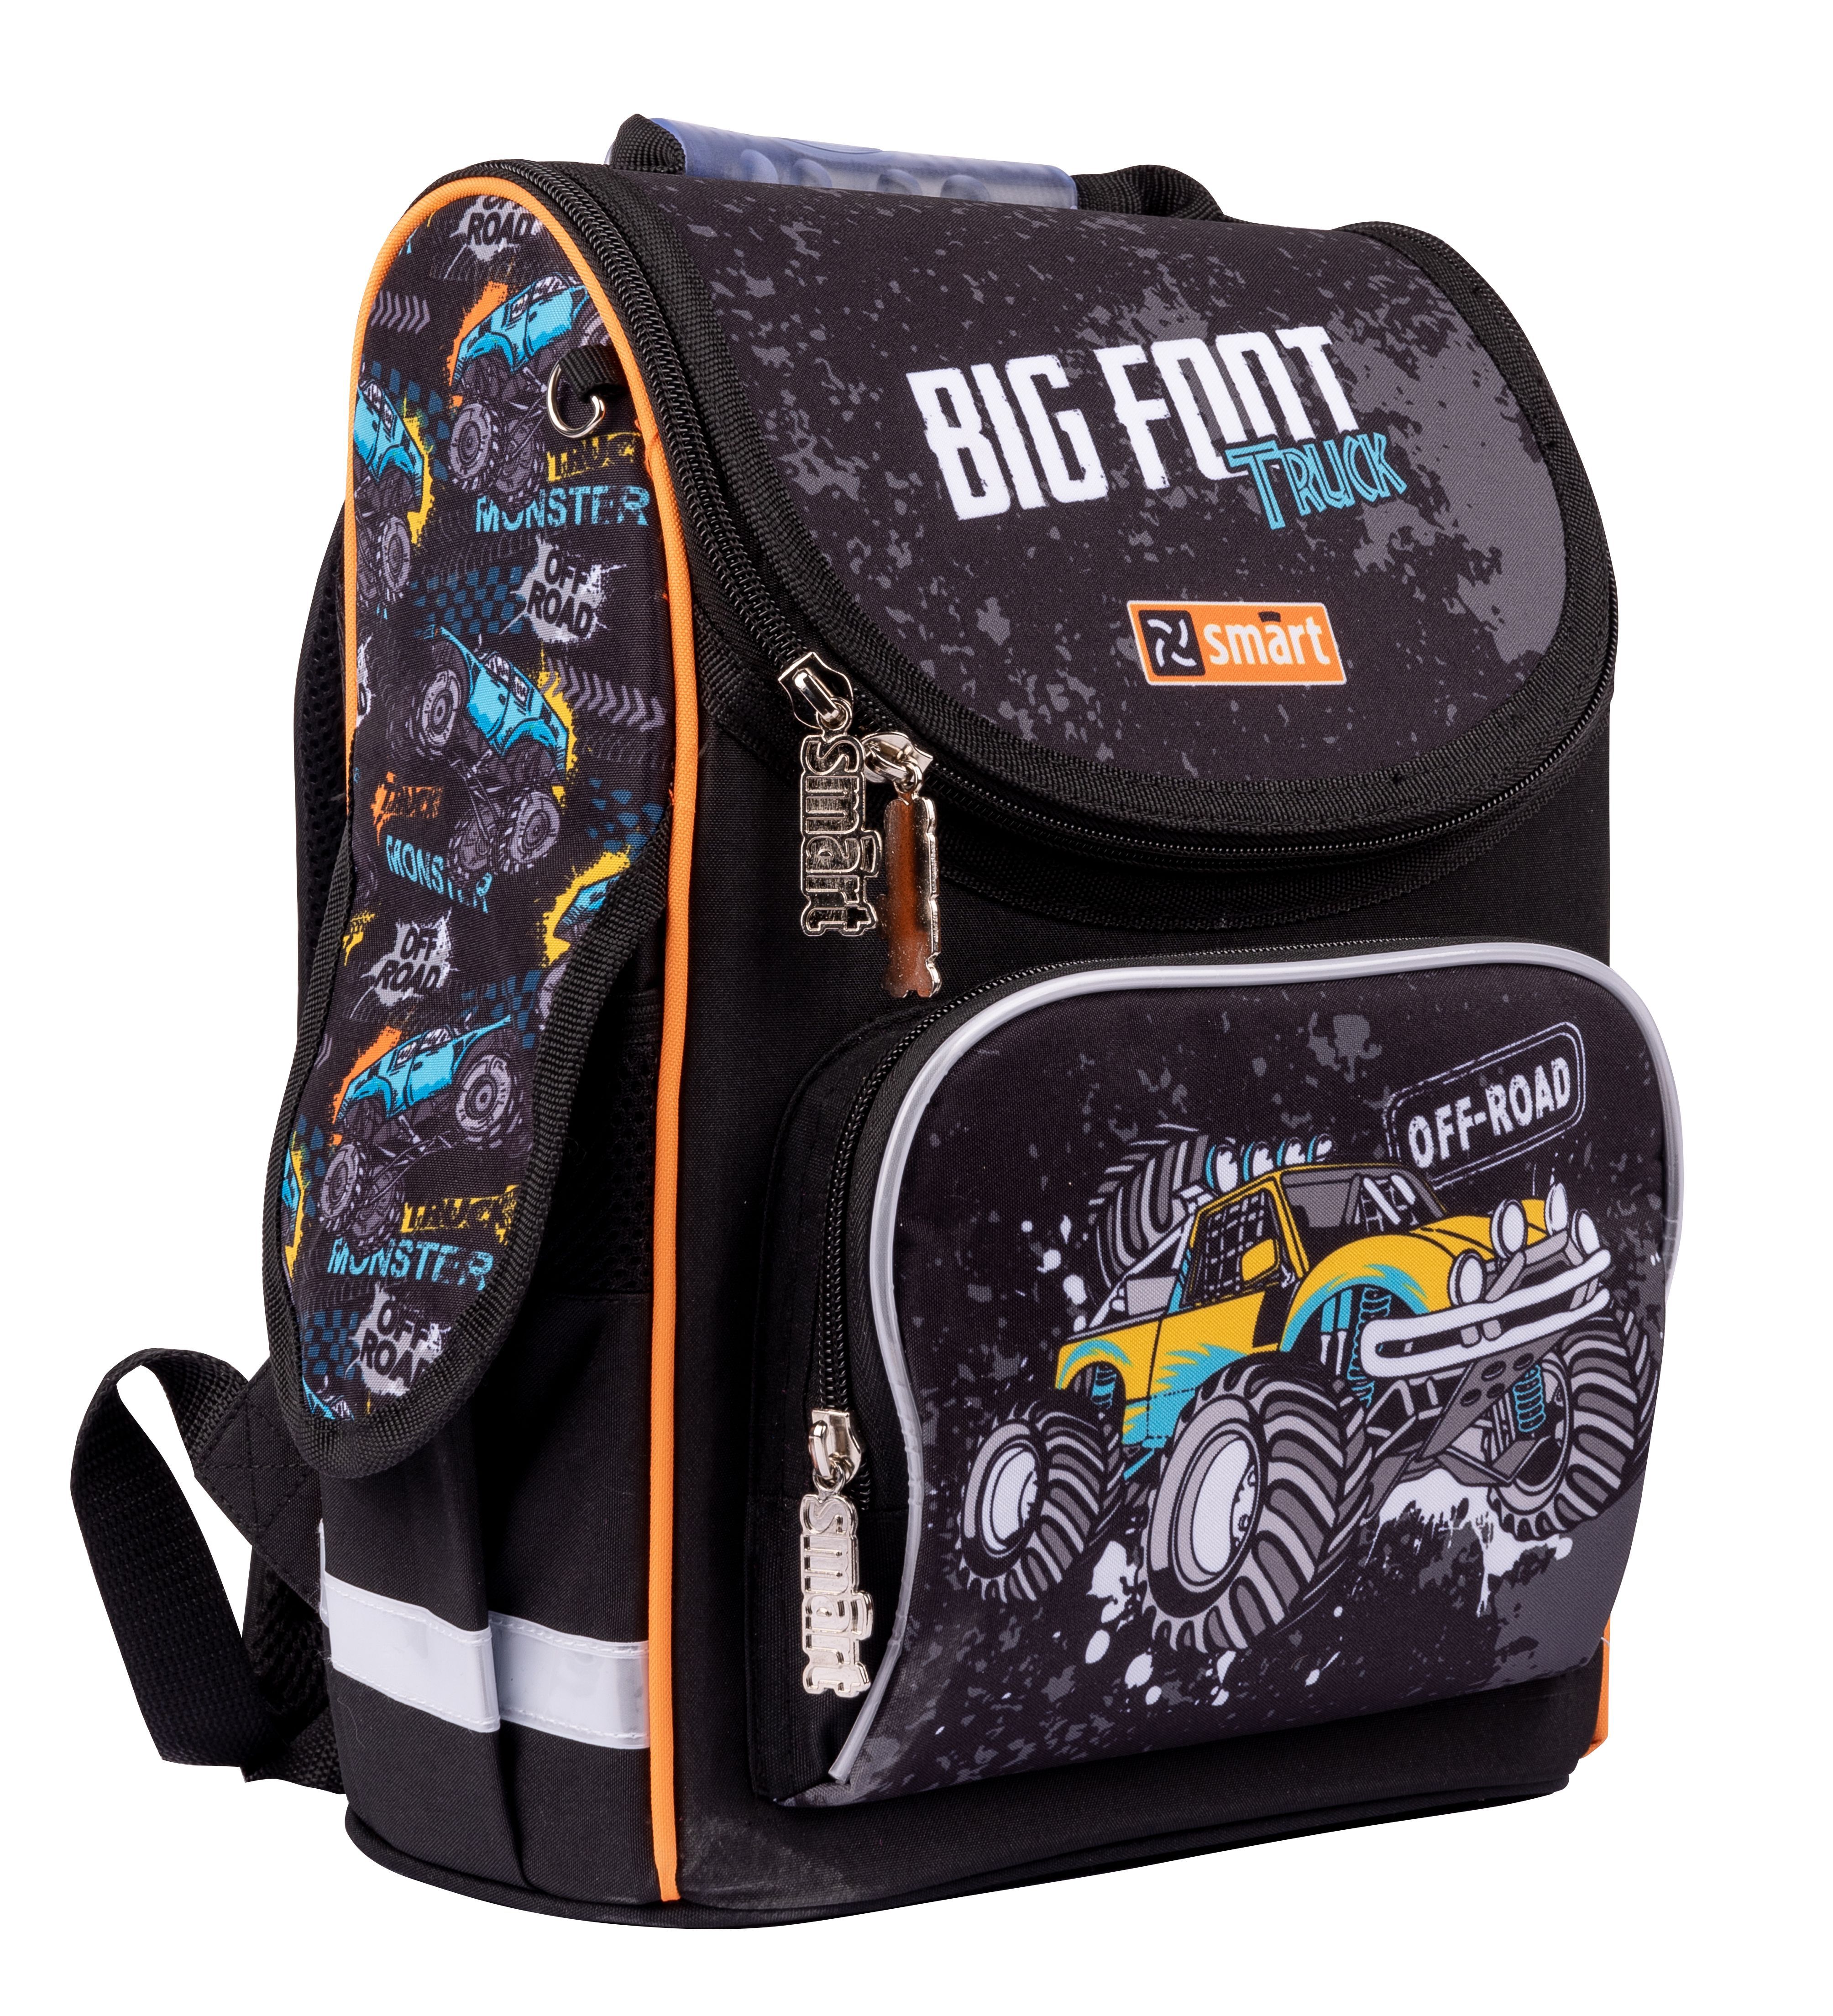 Рюкзак школьный каркасный Smart PG-11 Big Foot